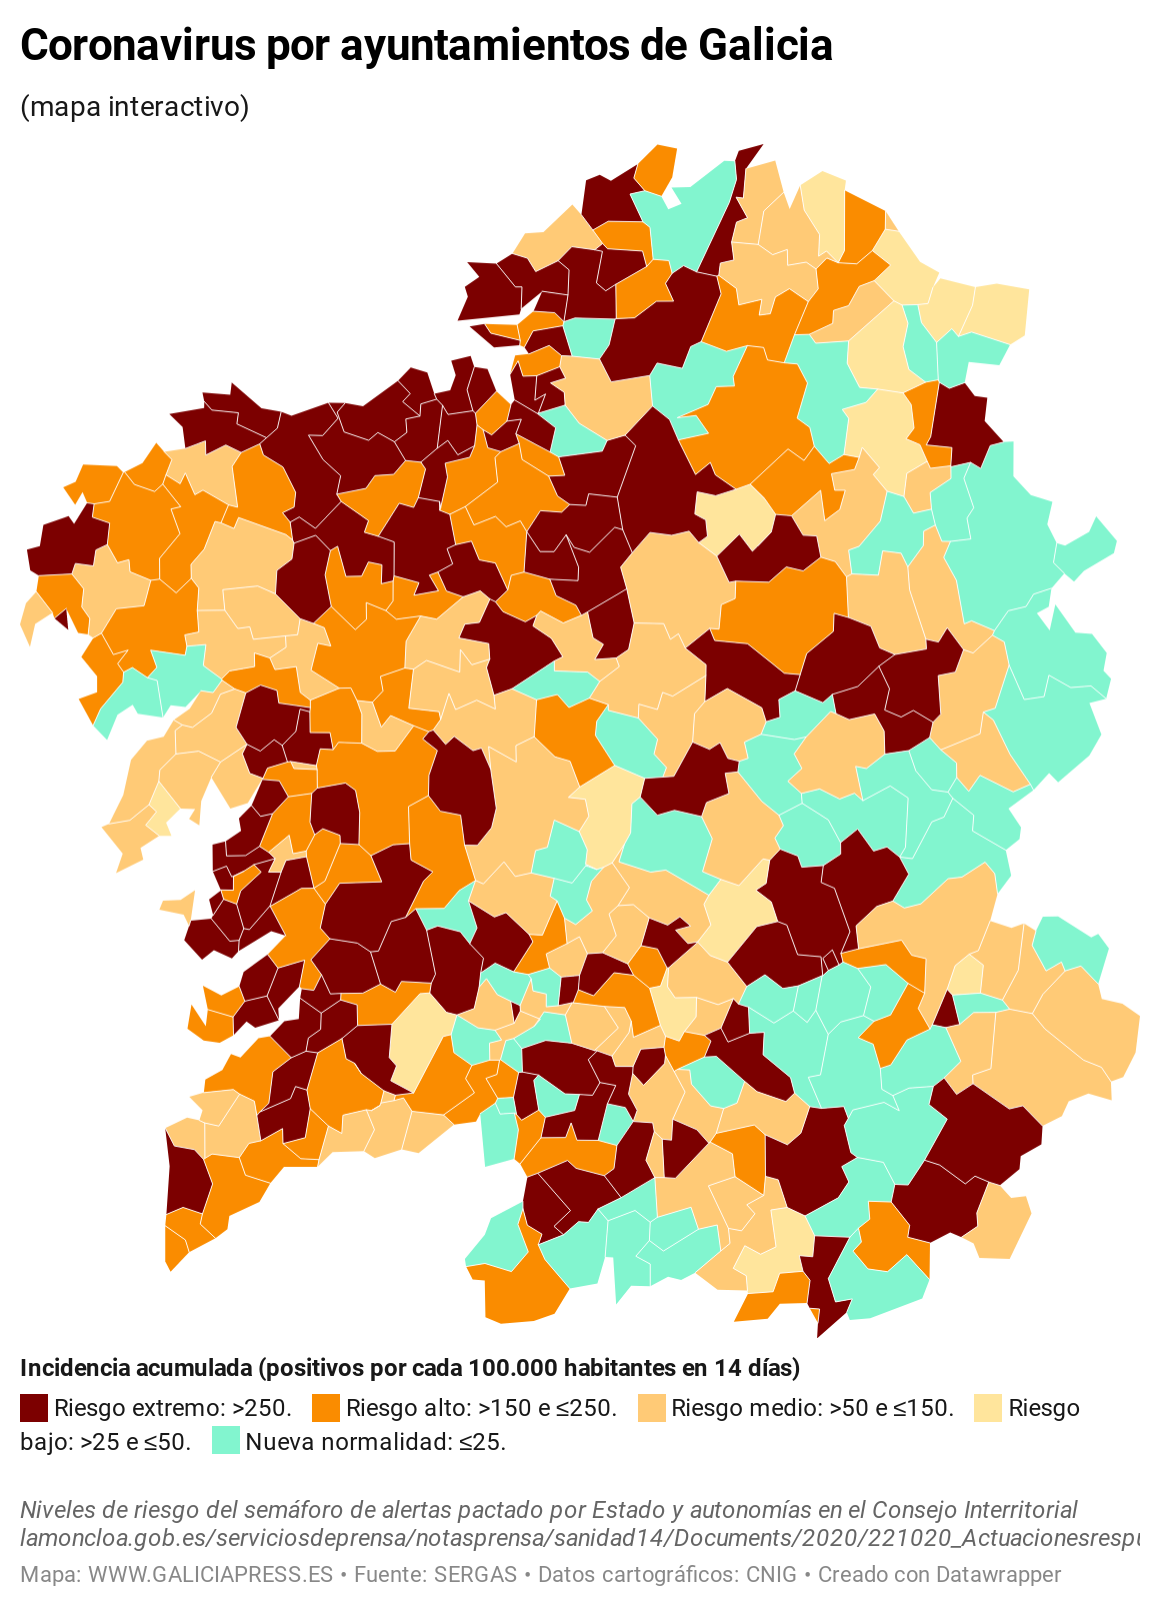 KV7EO coronavirus por concellos de galicia  (13)